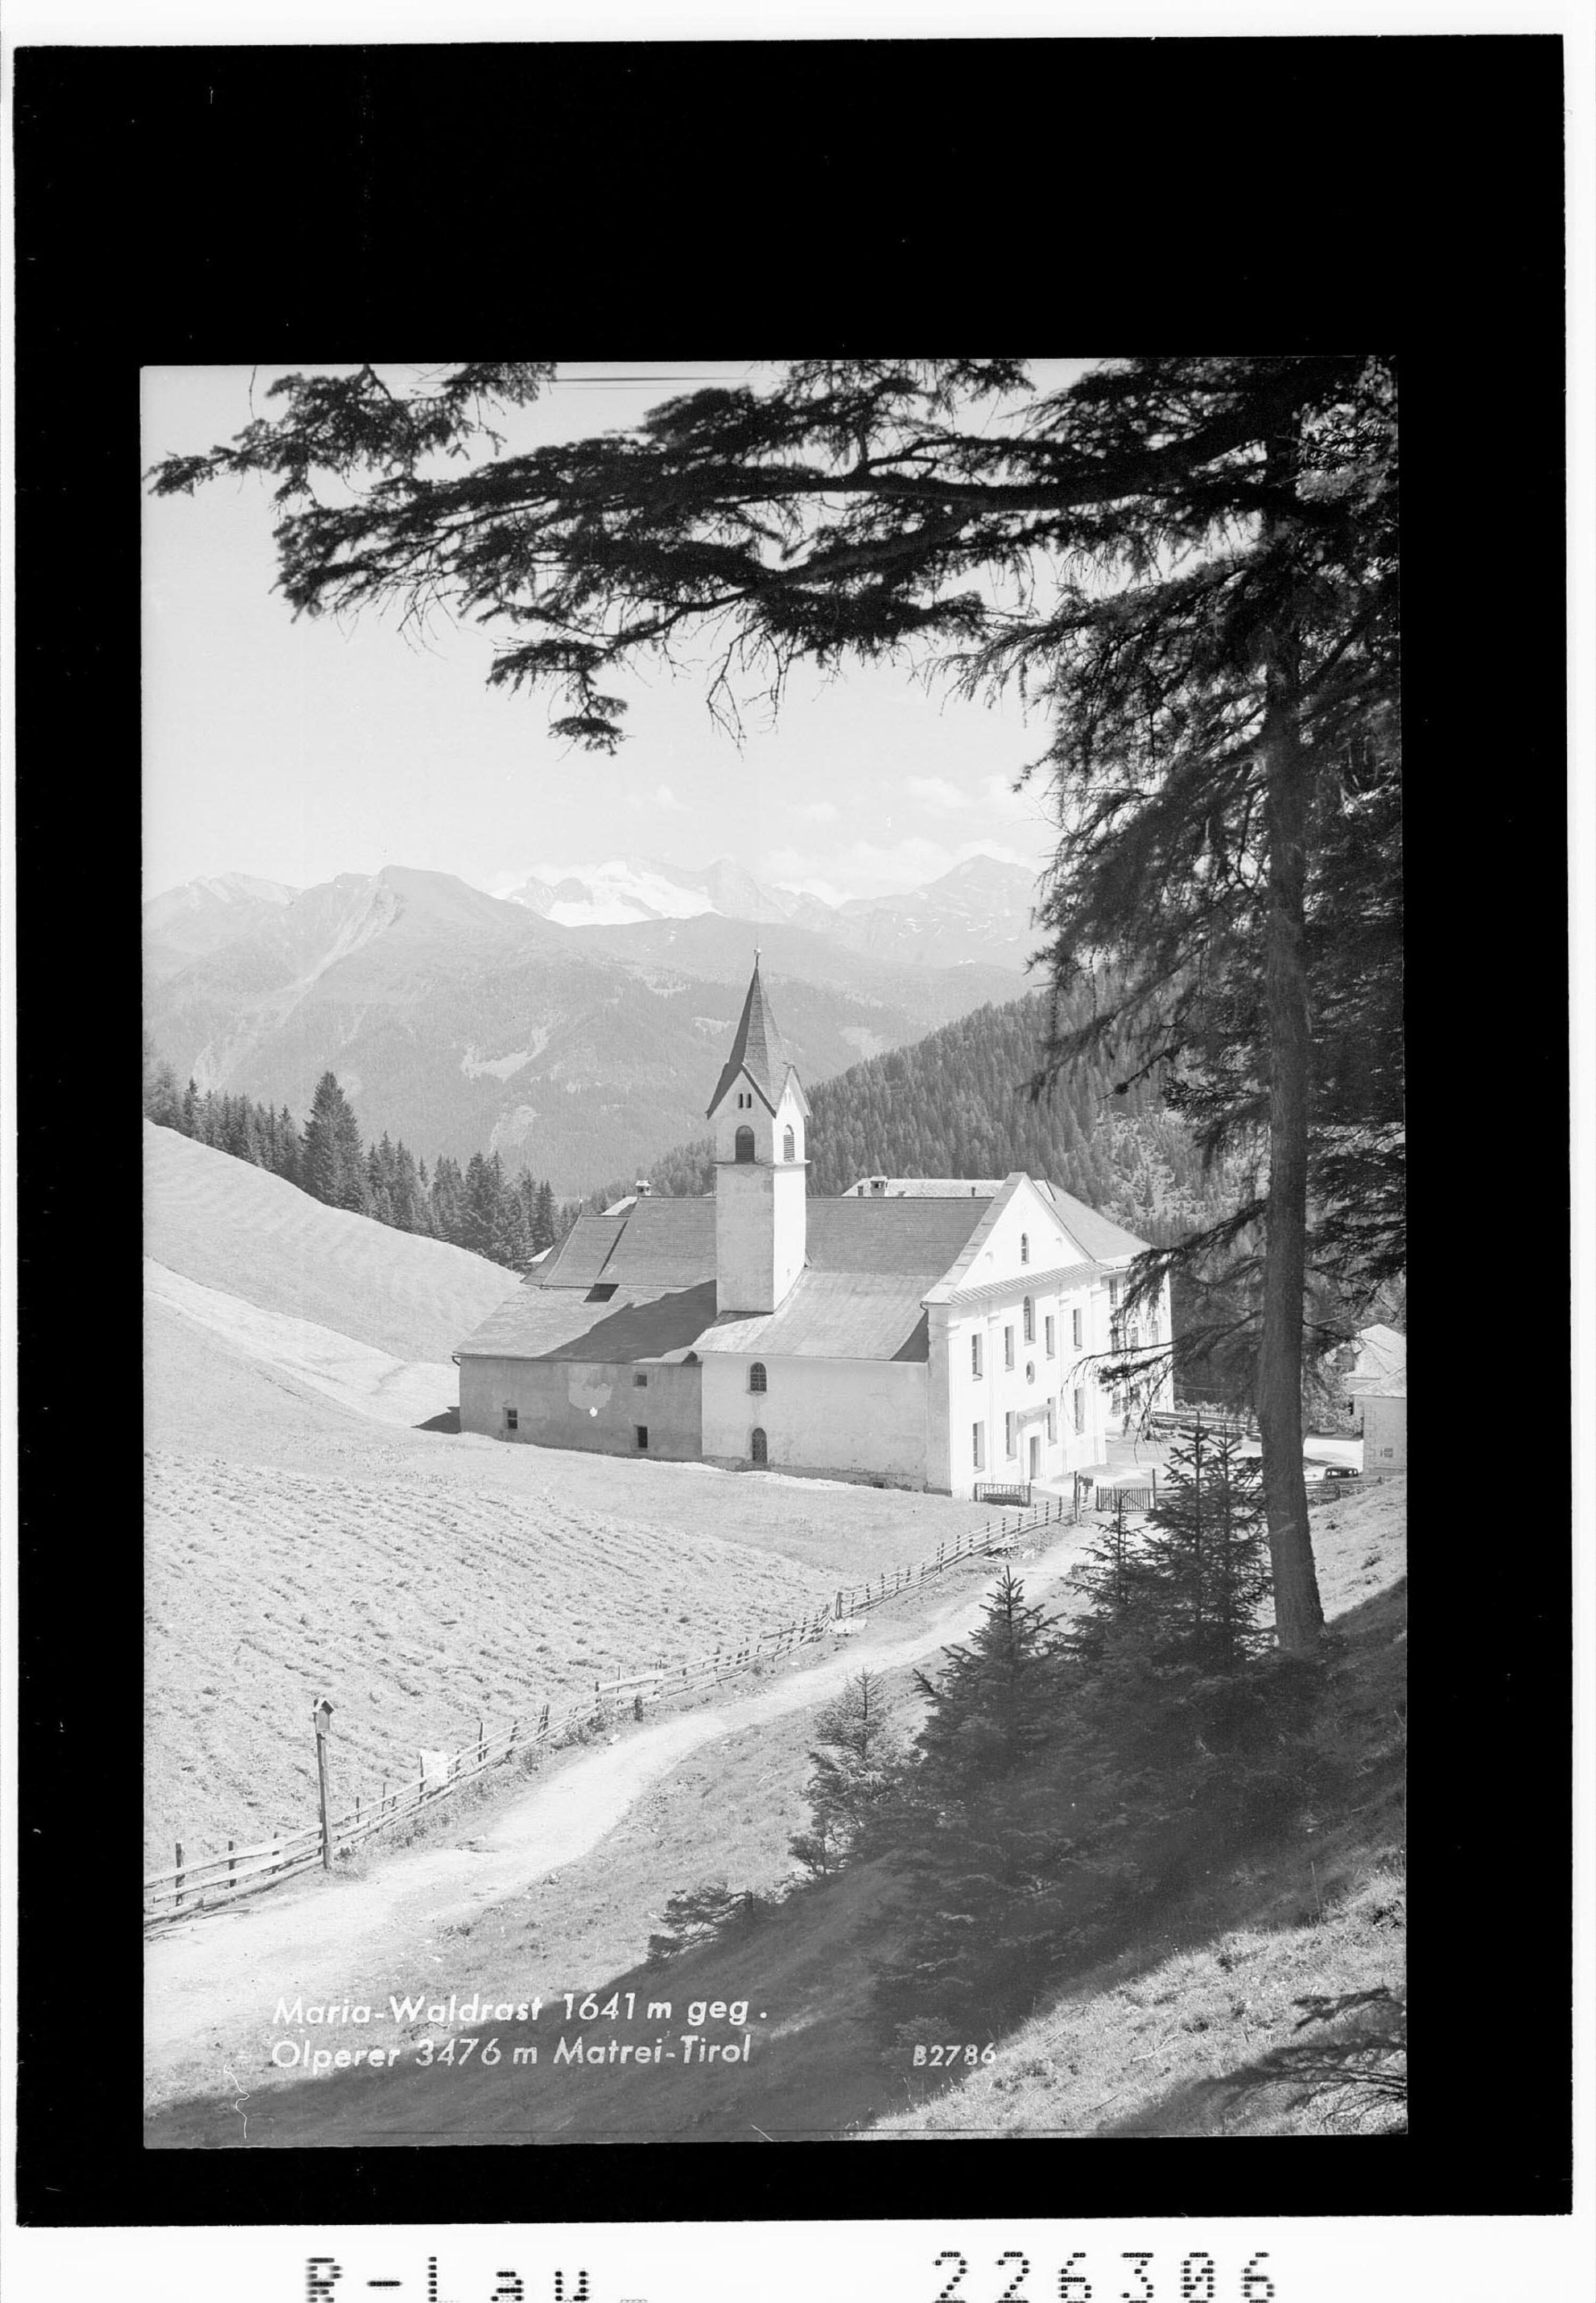 Maria Waldrast 1641 m gegen Olperer 3476 m / Matrei am Brenner / Tirol></div>


    <hr>
    <div class=